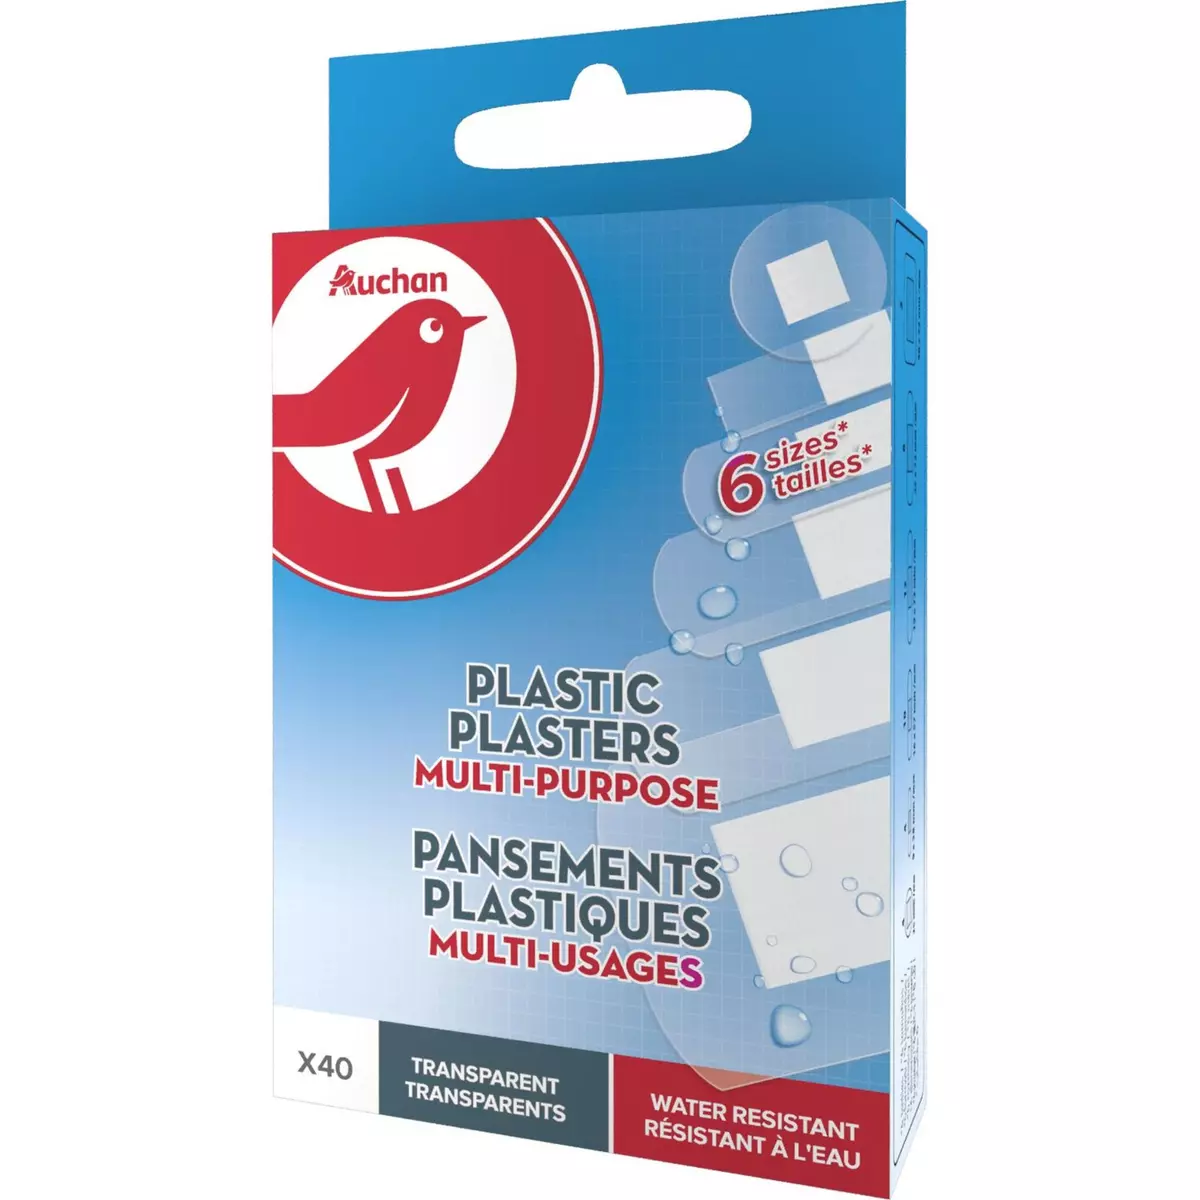 AUCHAN Pansements plastiques multi-usages transparents 6 tailles 40 pansements